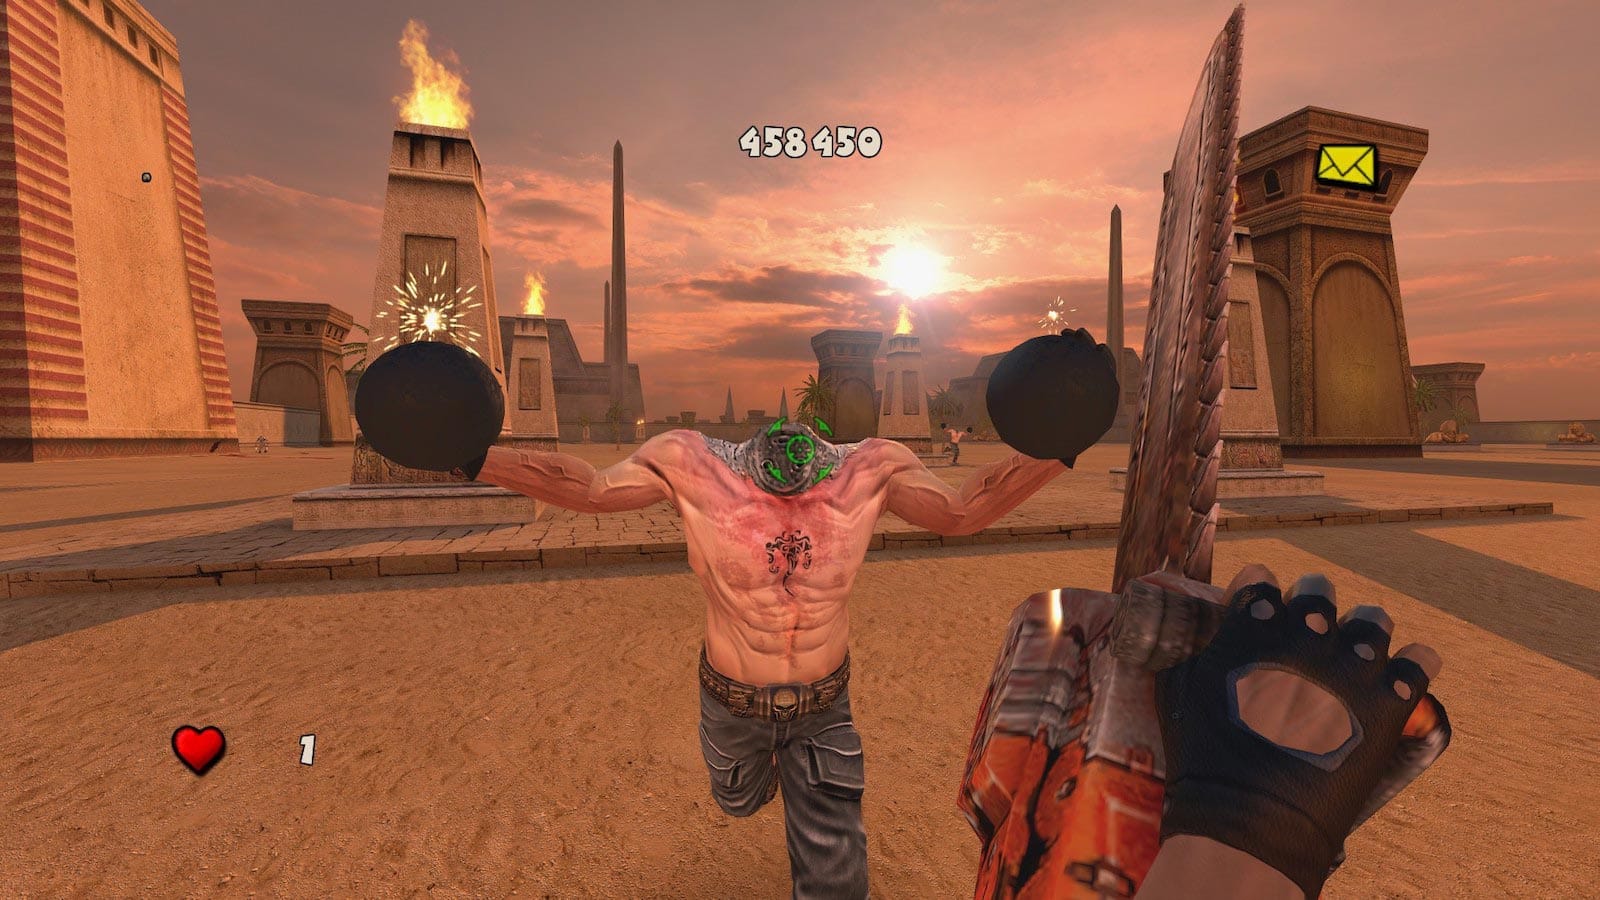 Фото: скриншот из ремастера игры Serioius Sam 3